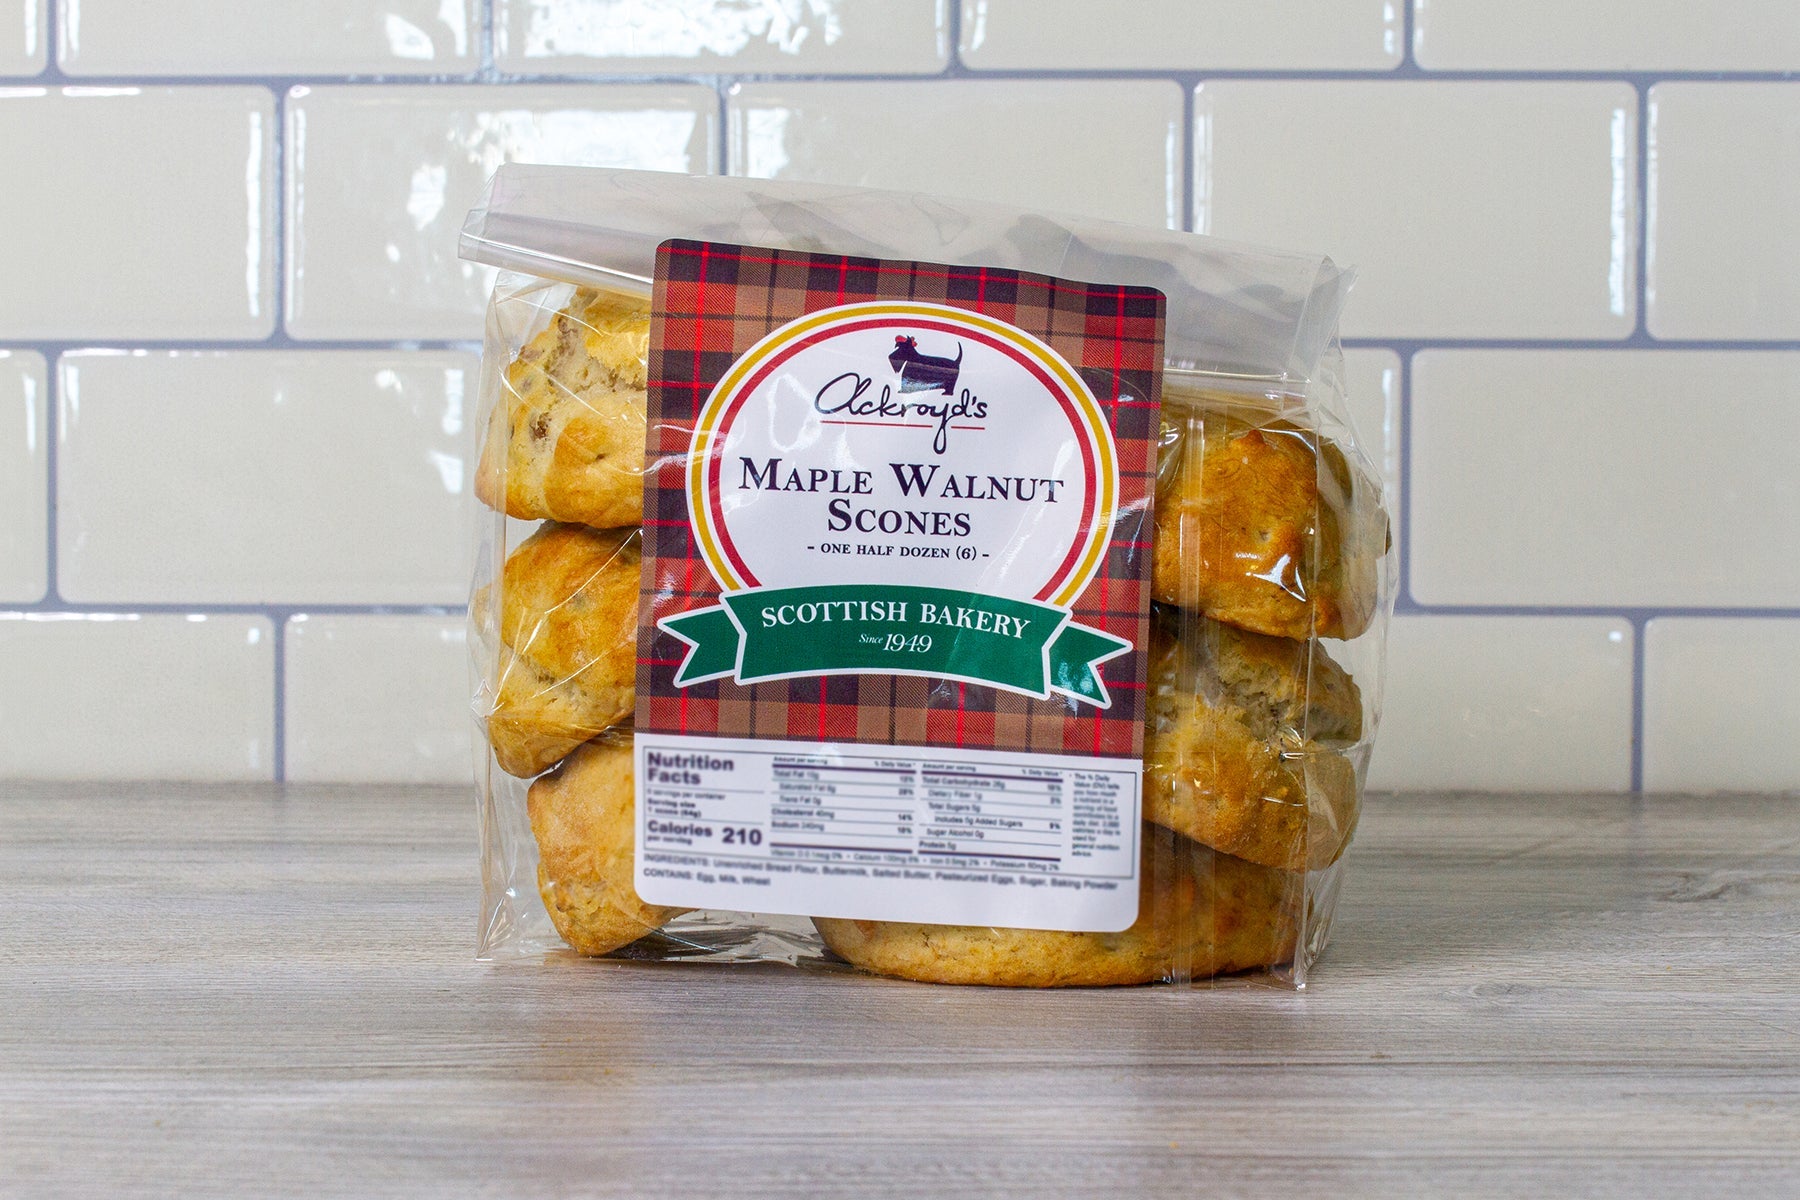 Ackroyd's Scones: Maple Walnut (6 Pack) - Ackroyd's Scottish Bakery